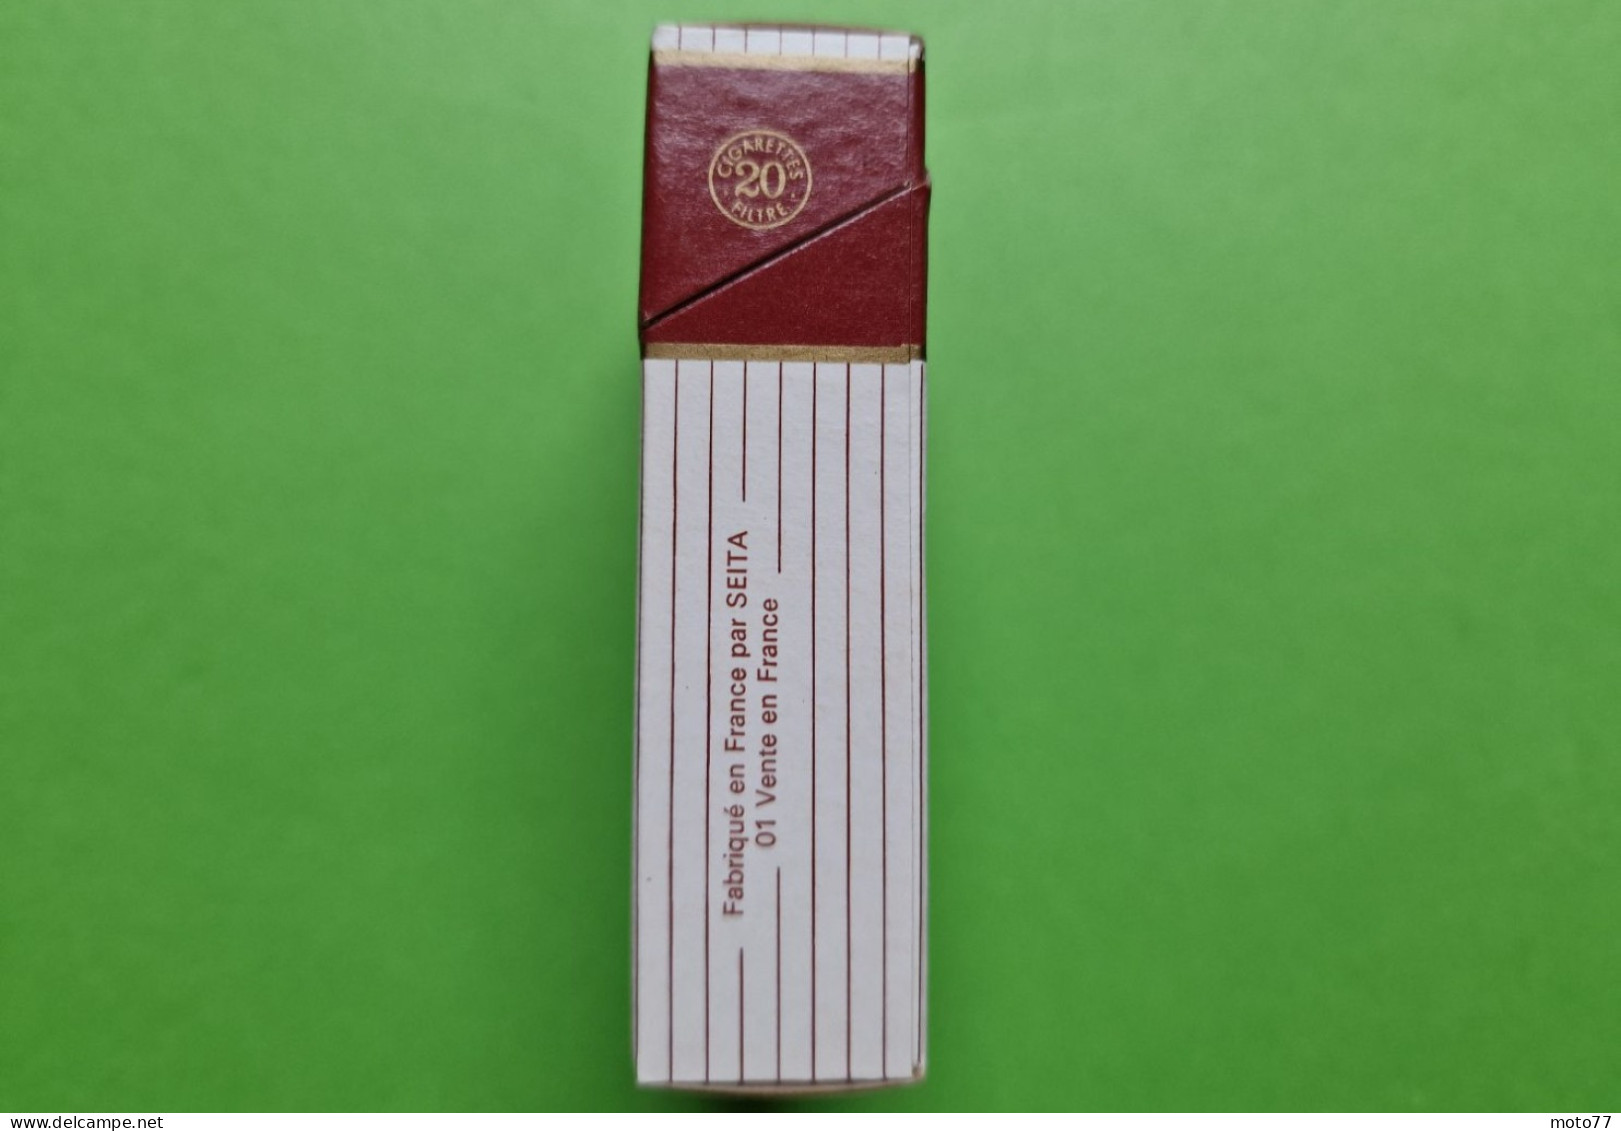 Ancien PAQUET De CIGARETTES Vide - MARIGNY - Vers 1980 - Etuis à Cigarettes Vides